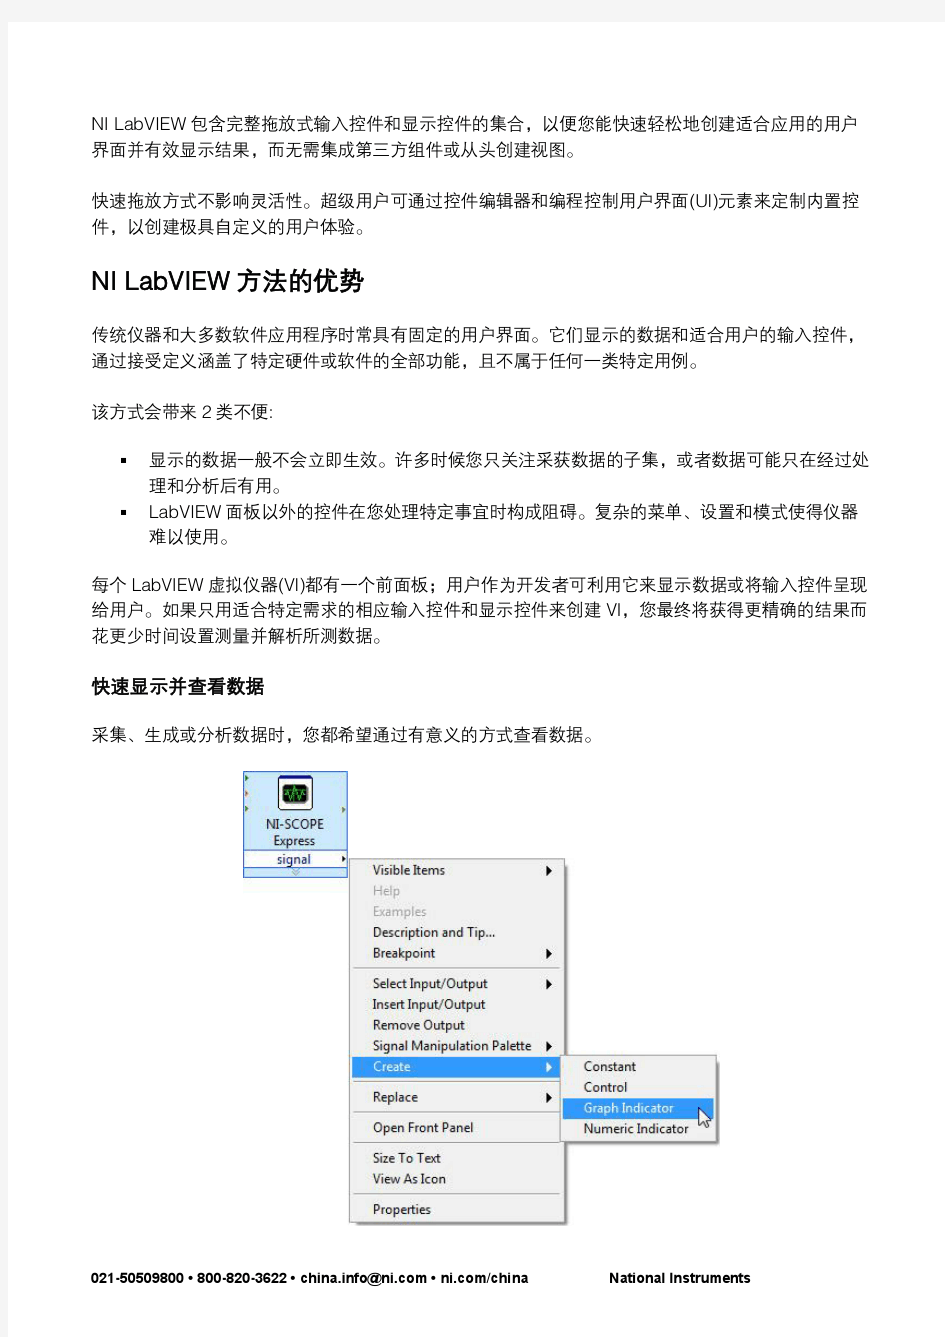 4 NI LabVIEW数据视觉化和用户界面设计